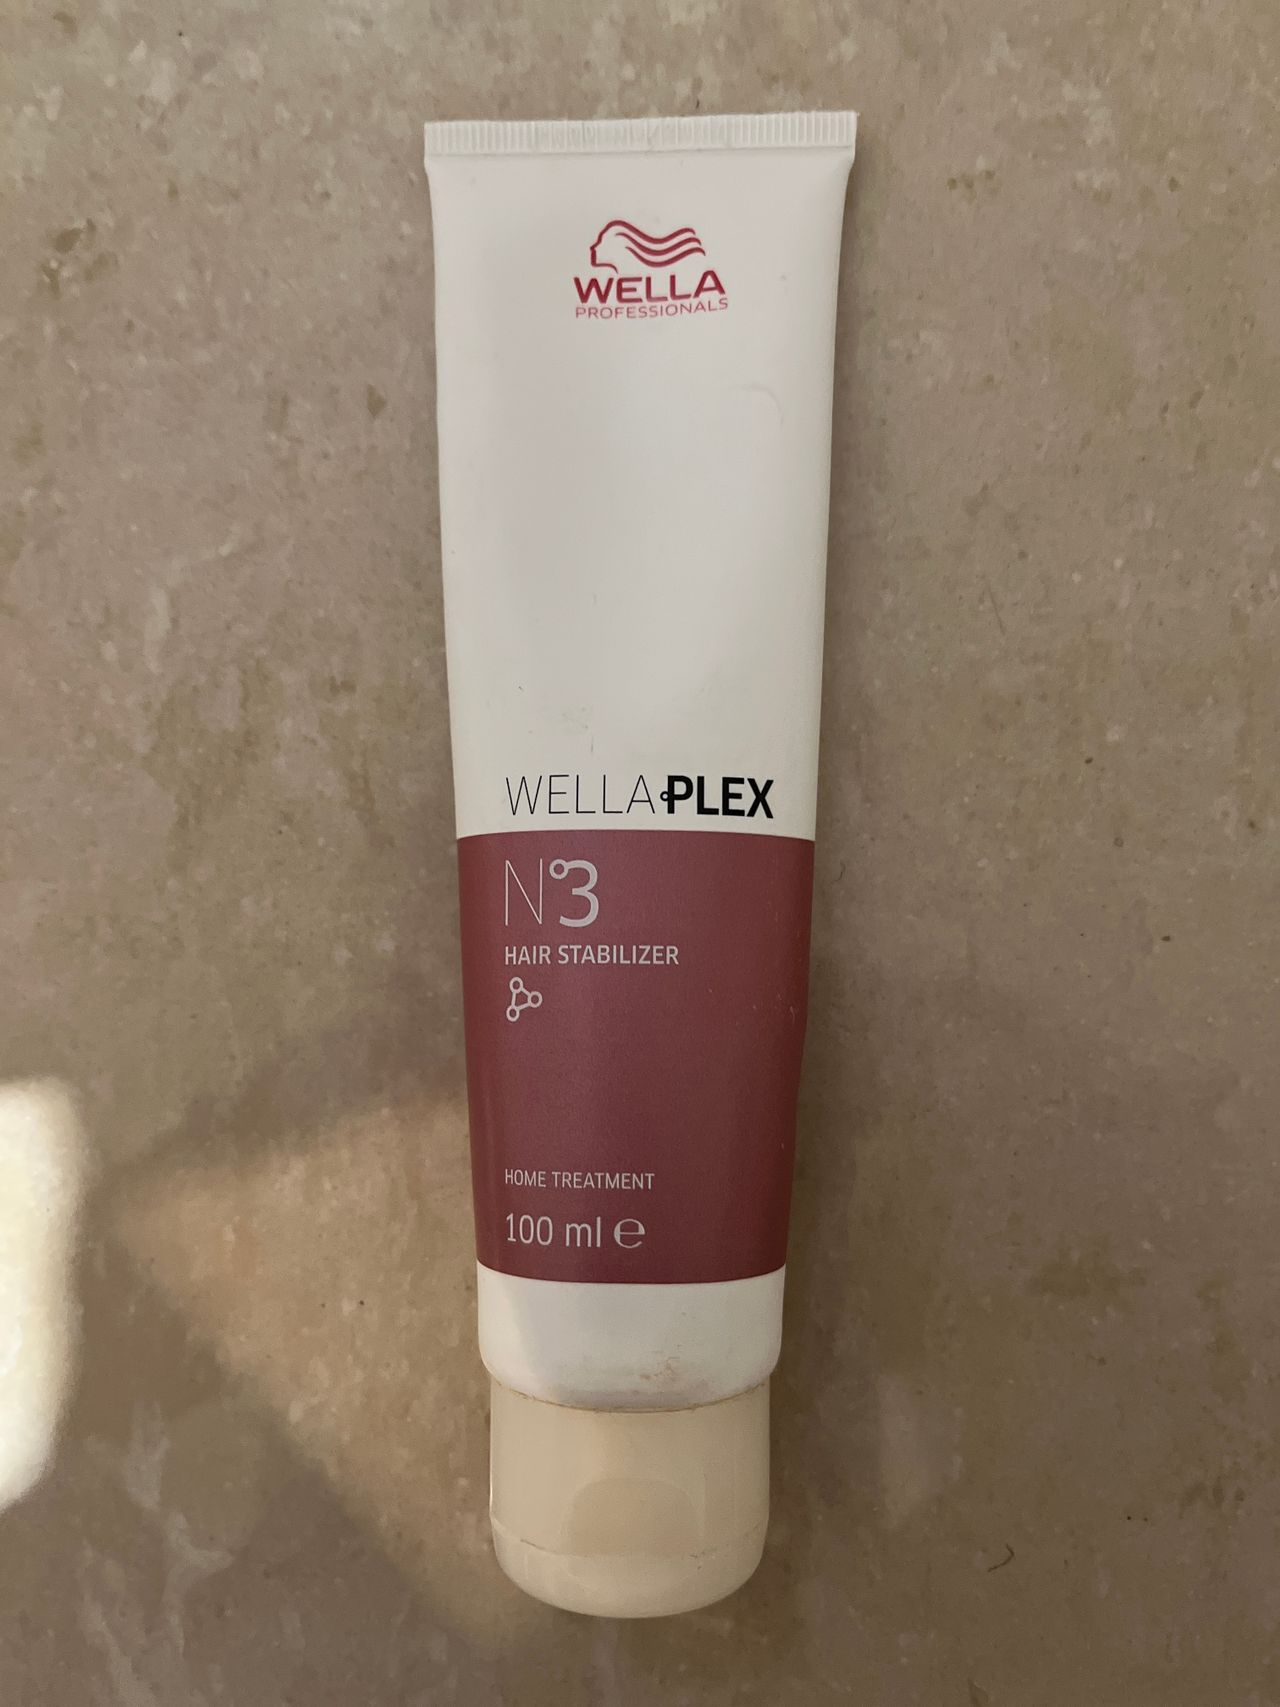 Wella WellaPlex  Hair Stabilizer | FINN torget